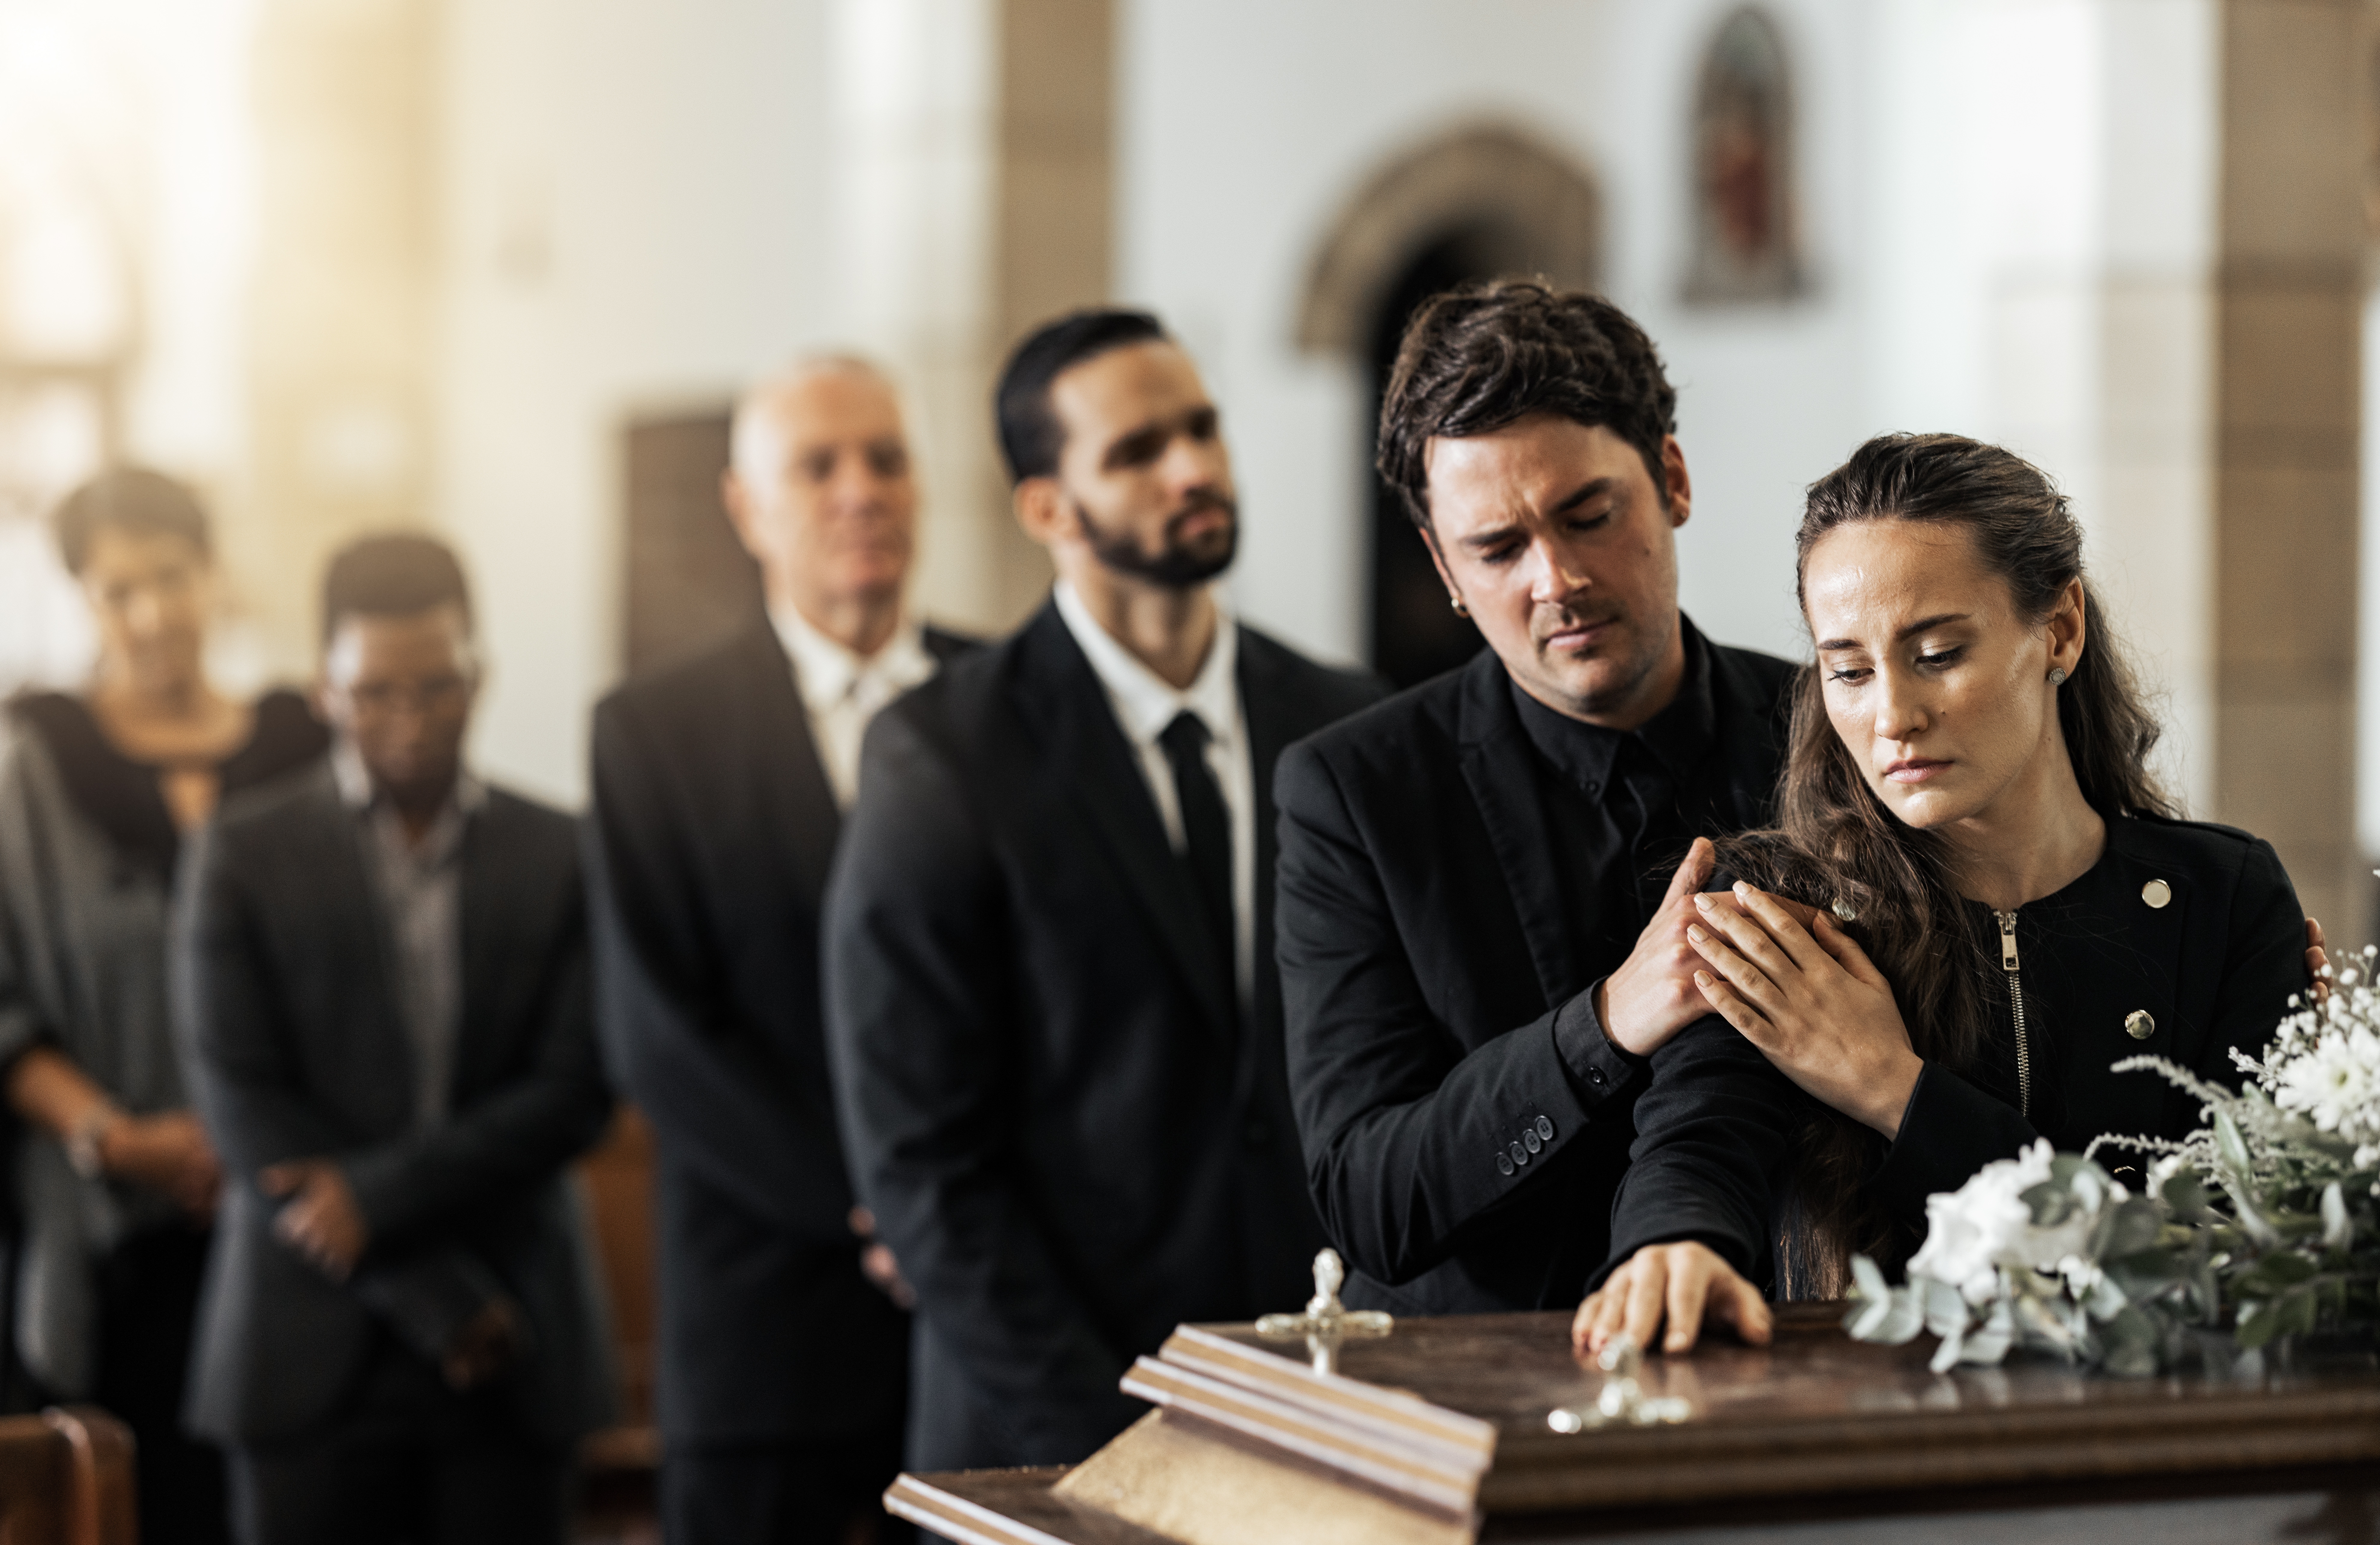 Des personnes se tiennent près d'un cercueil | Source : Shutterstock